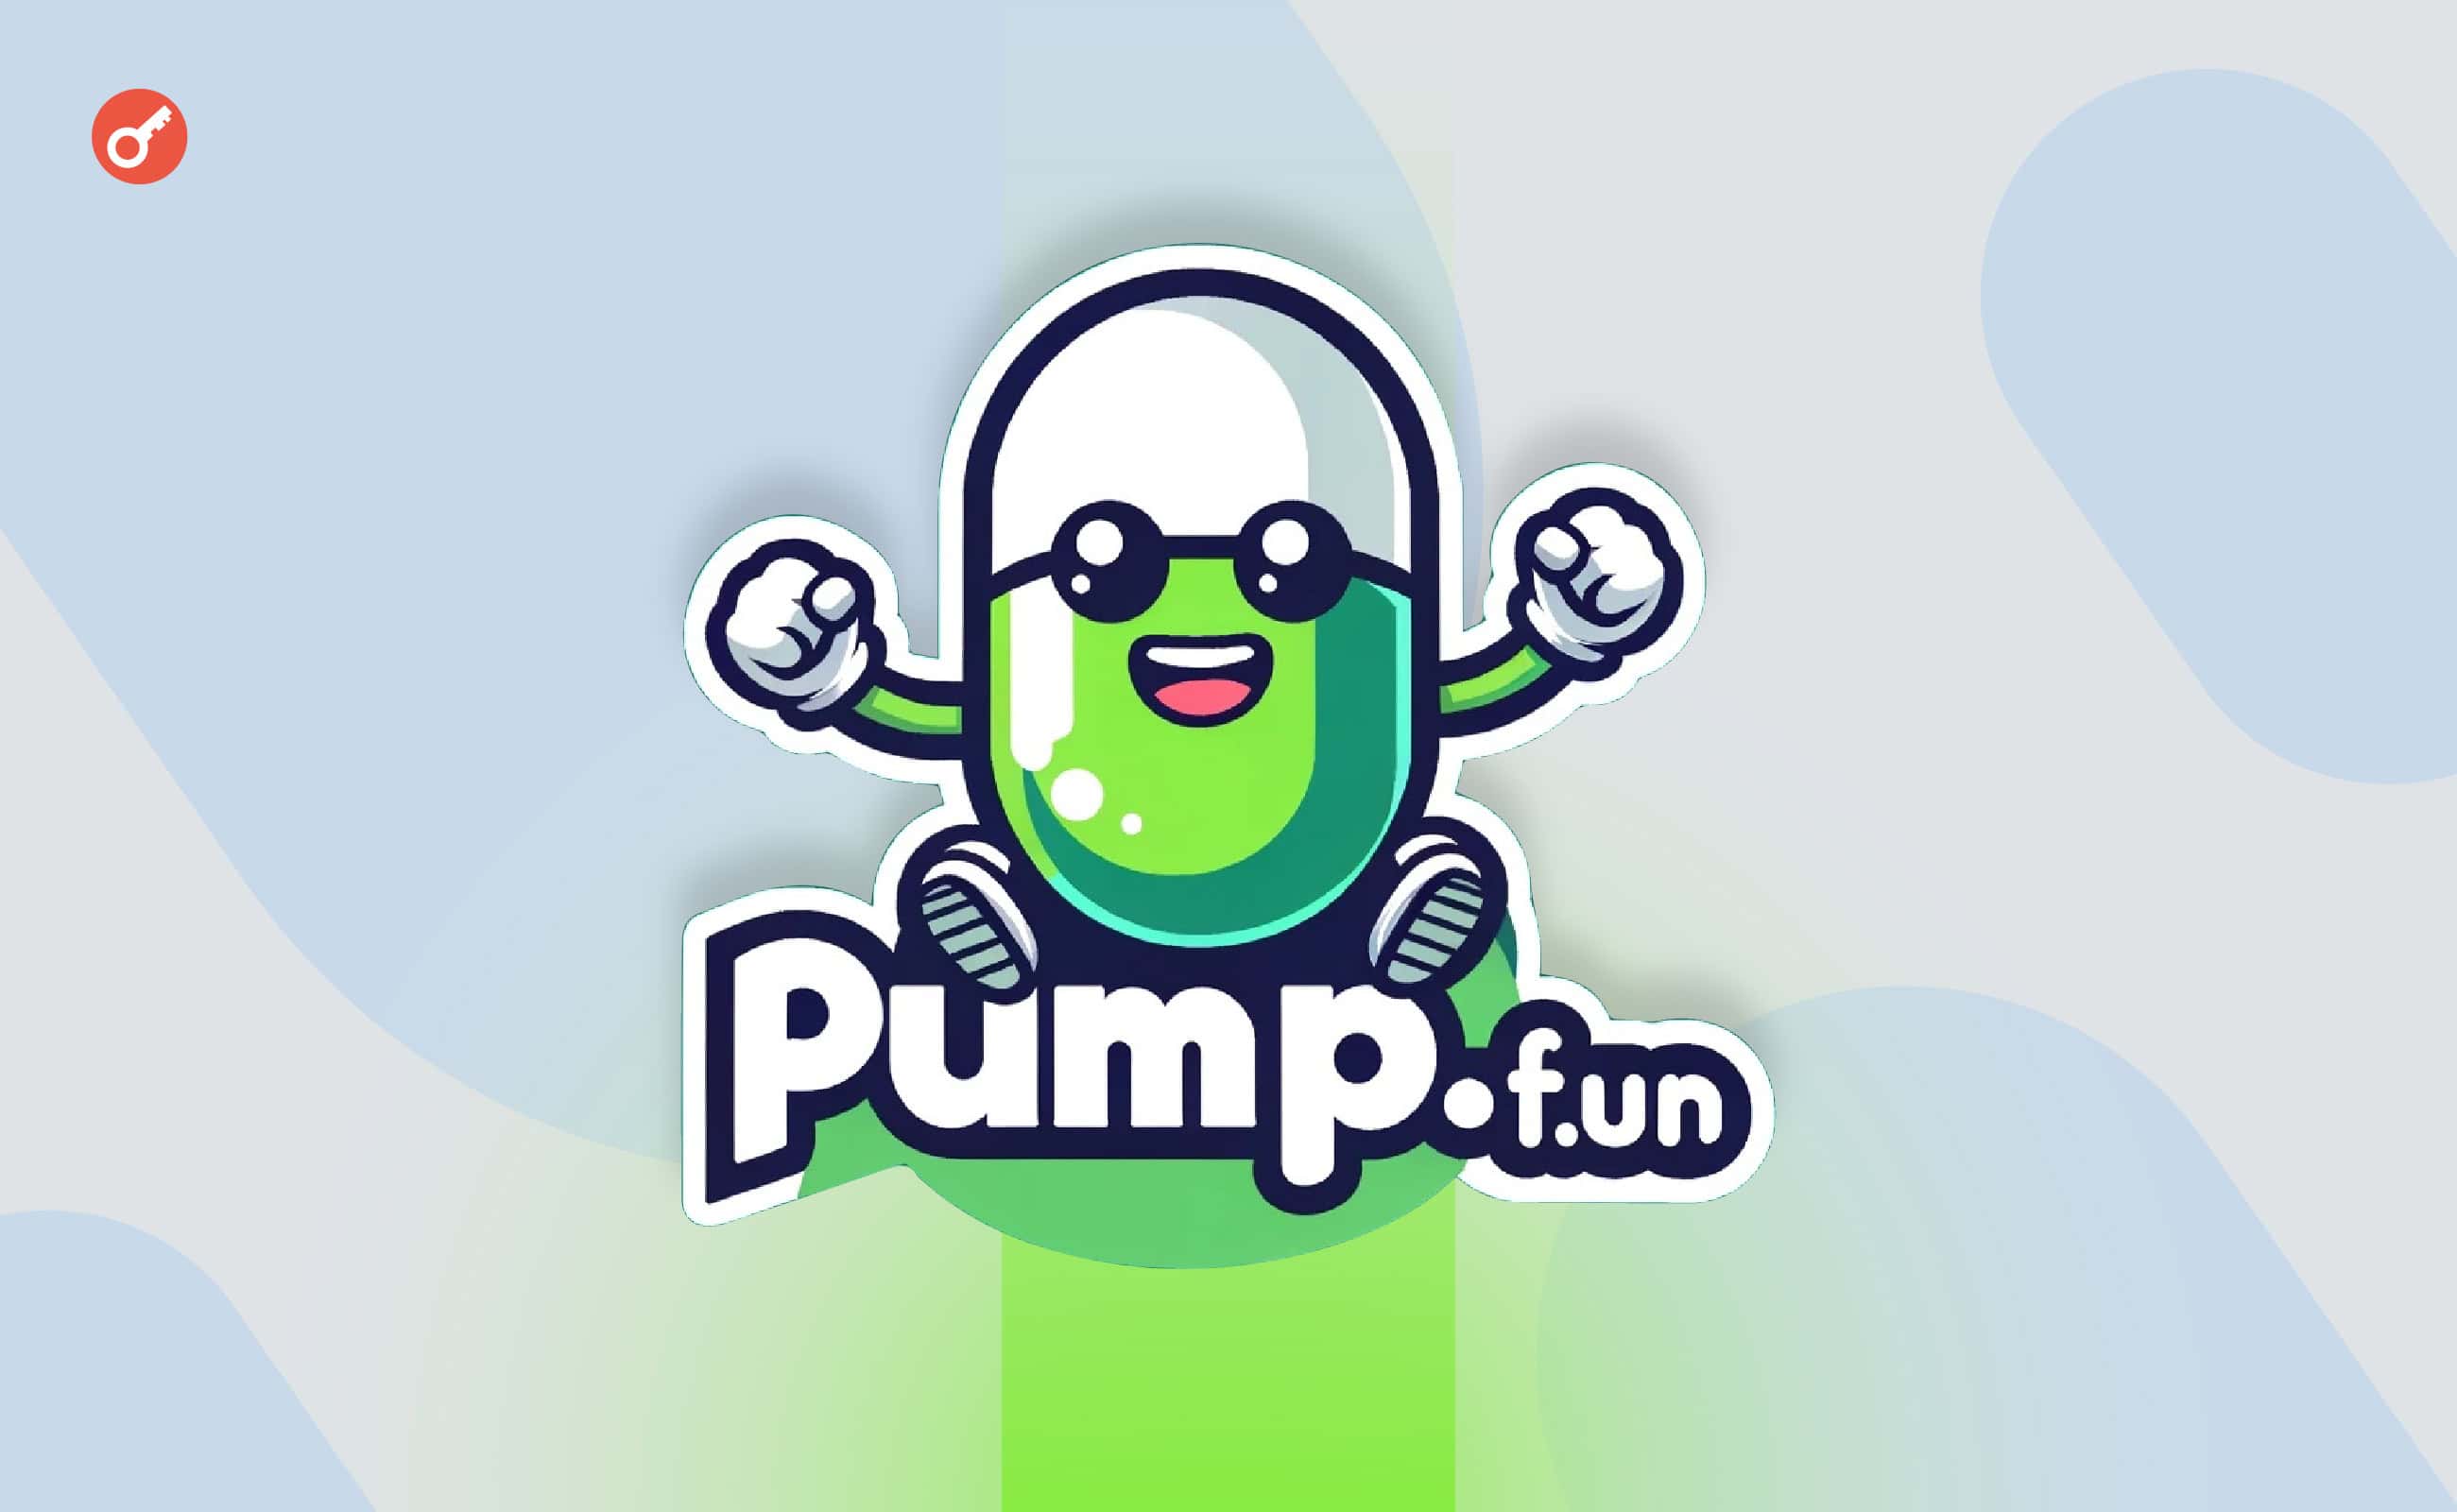 Доход pump.fun пересек отметку в $1 млн за сутки. Заглавный коллаж новости.